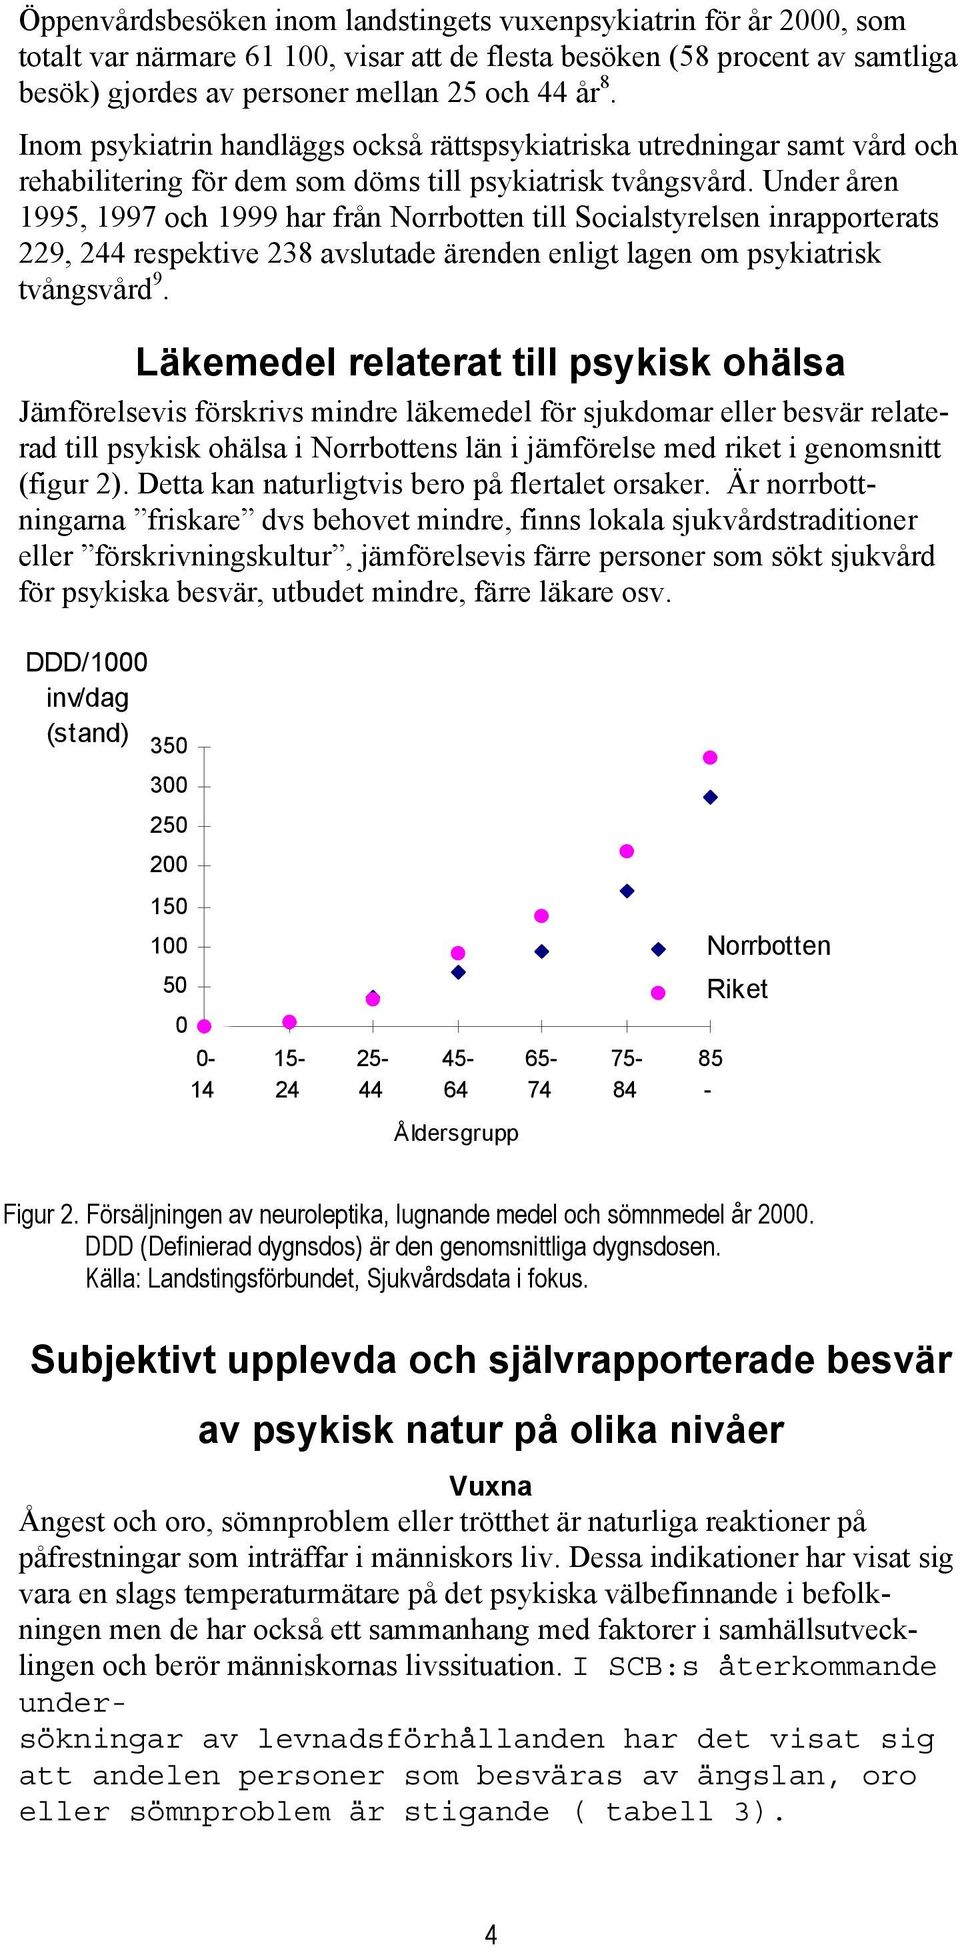 Under åren 1995, 1997 och 1999 har från Norrbotten till Socialstyrelsen inrapporterats 229, 244 respektive 238 avslutade ärenden enligt lagen om psykiatrisk tvångsvård 9.